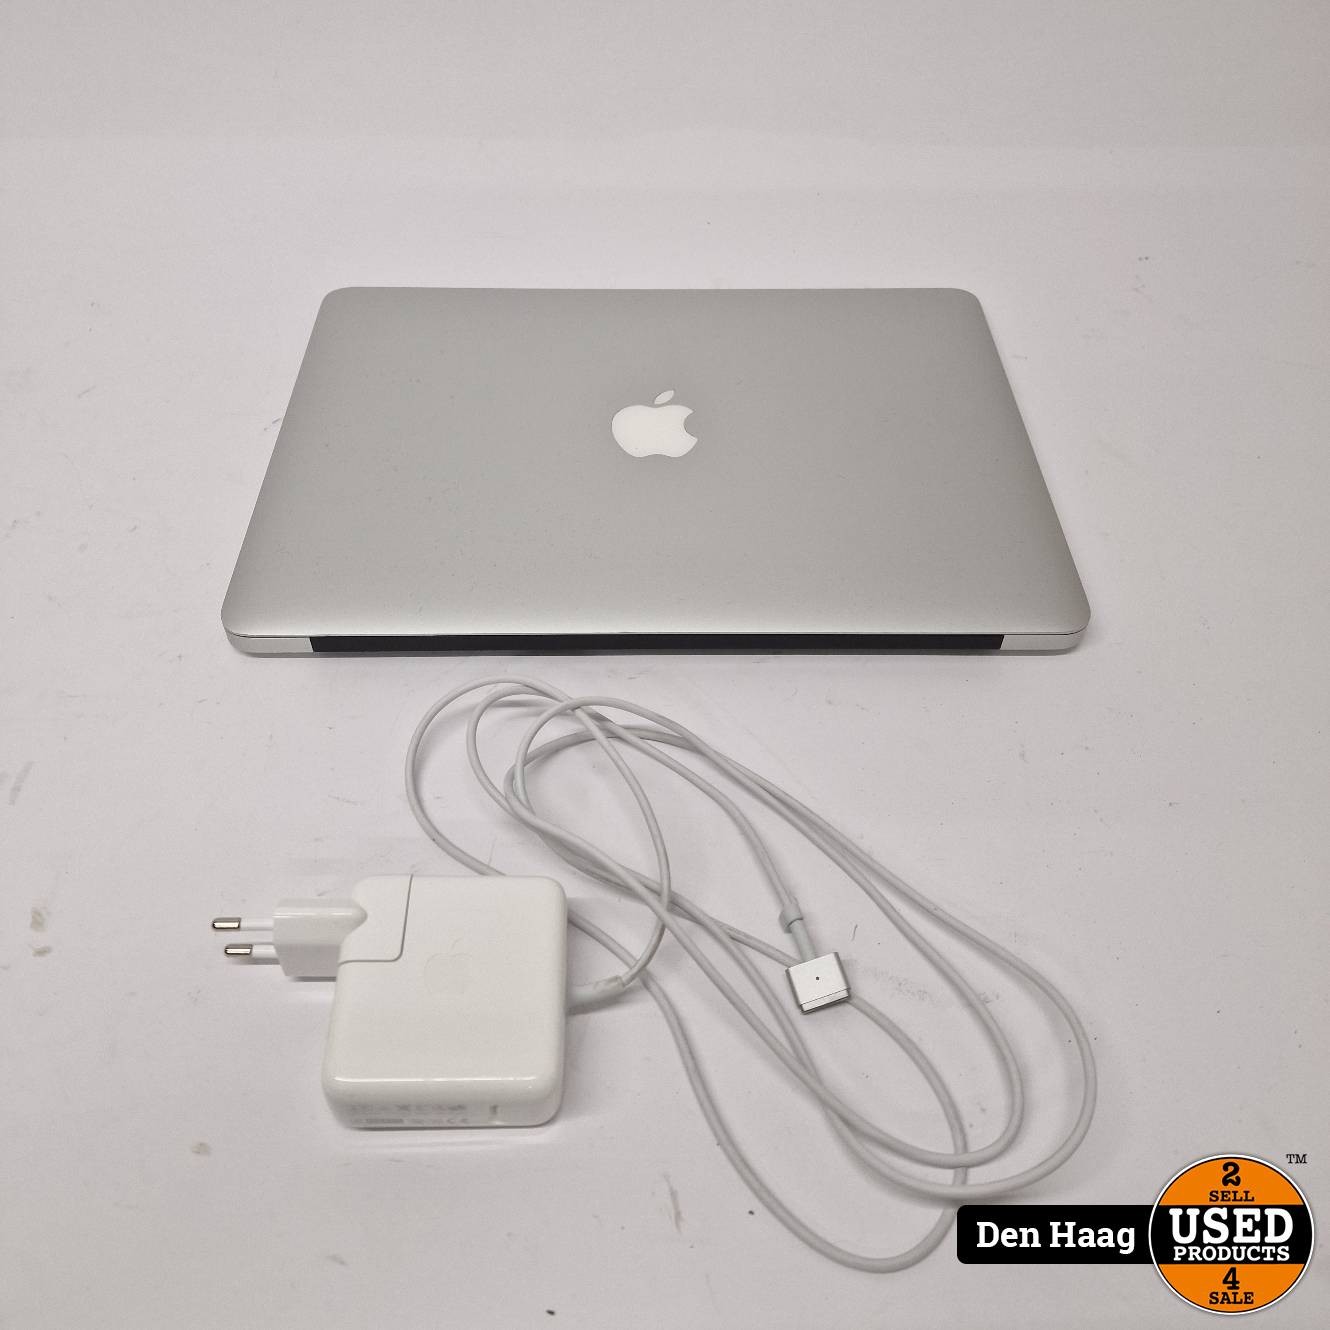 Apple Macbook Air 2017 i5 256gb 8gb | accu moet worden vervangen - Used Products Den